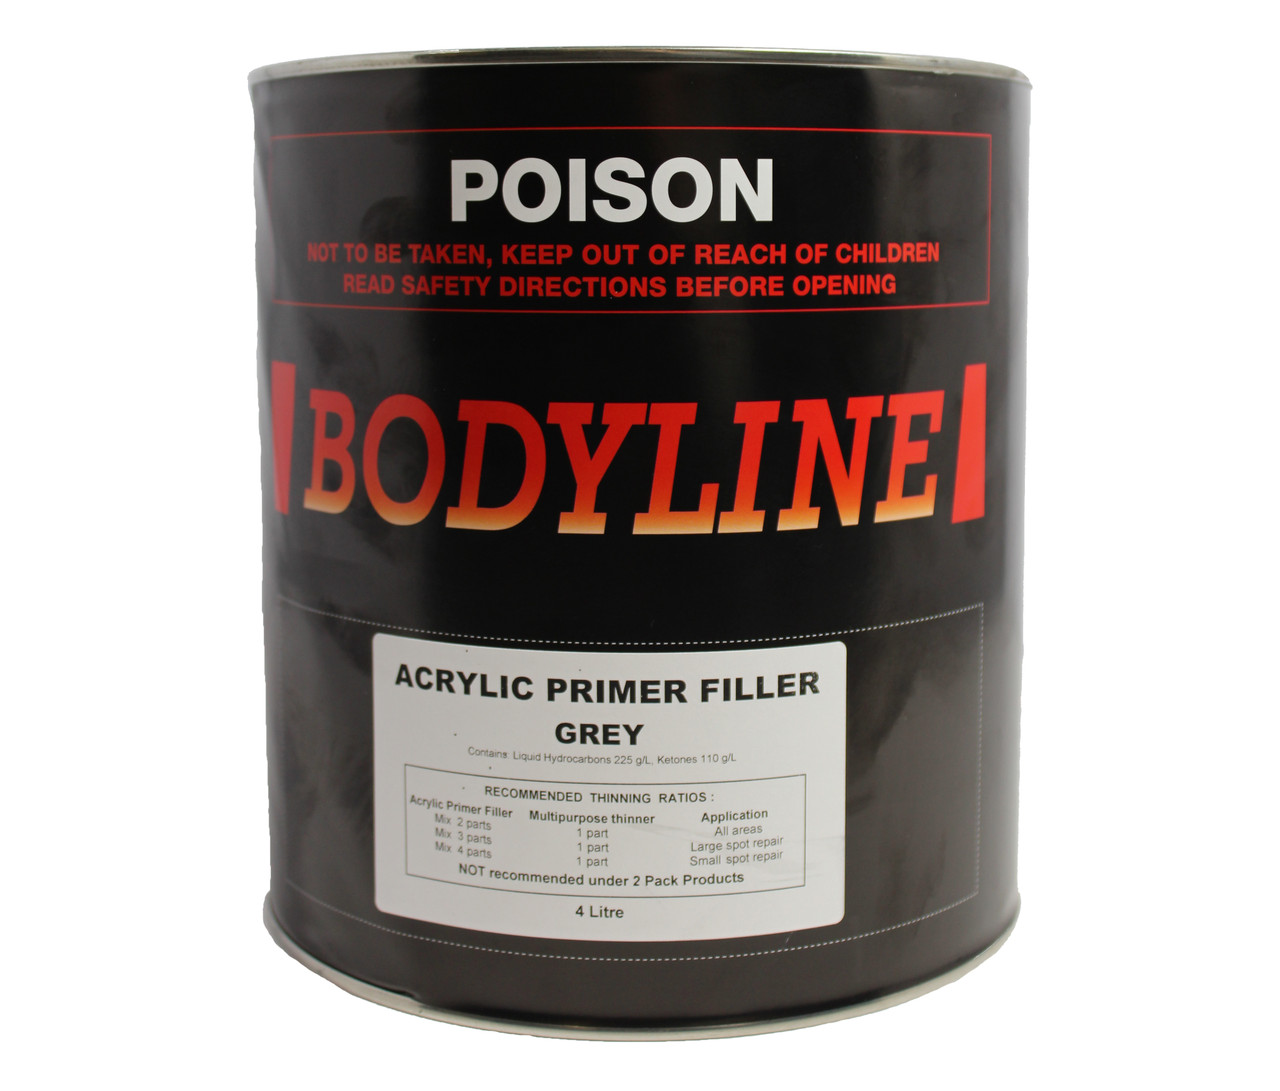 Bodyline Acrylic Primer Filler 4Lt